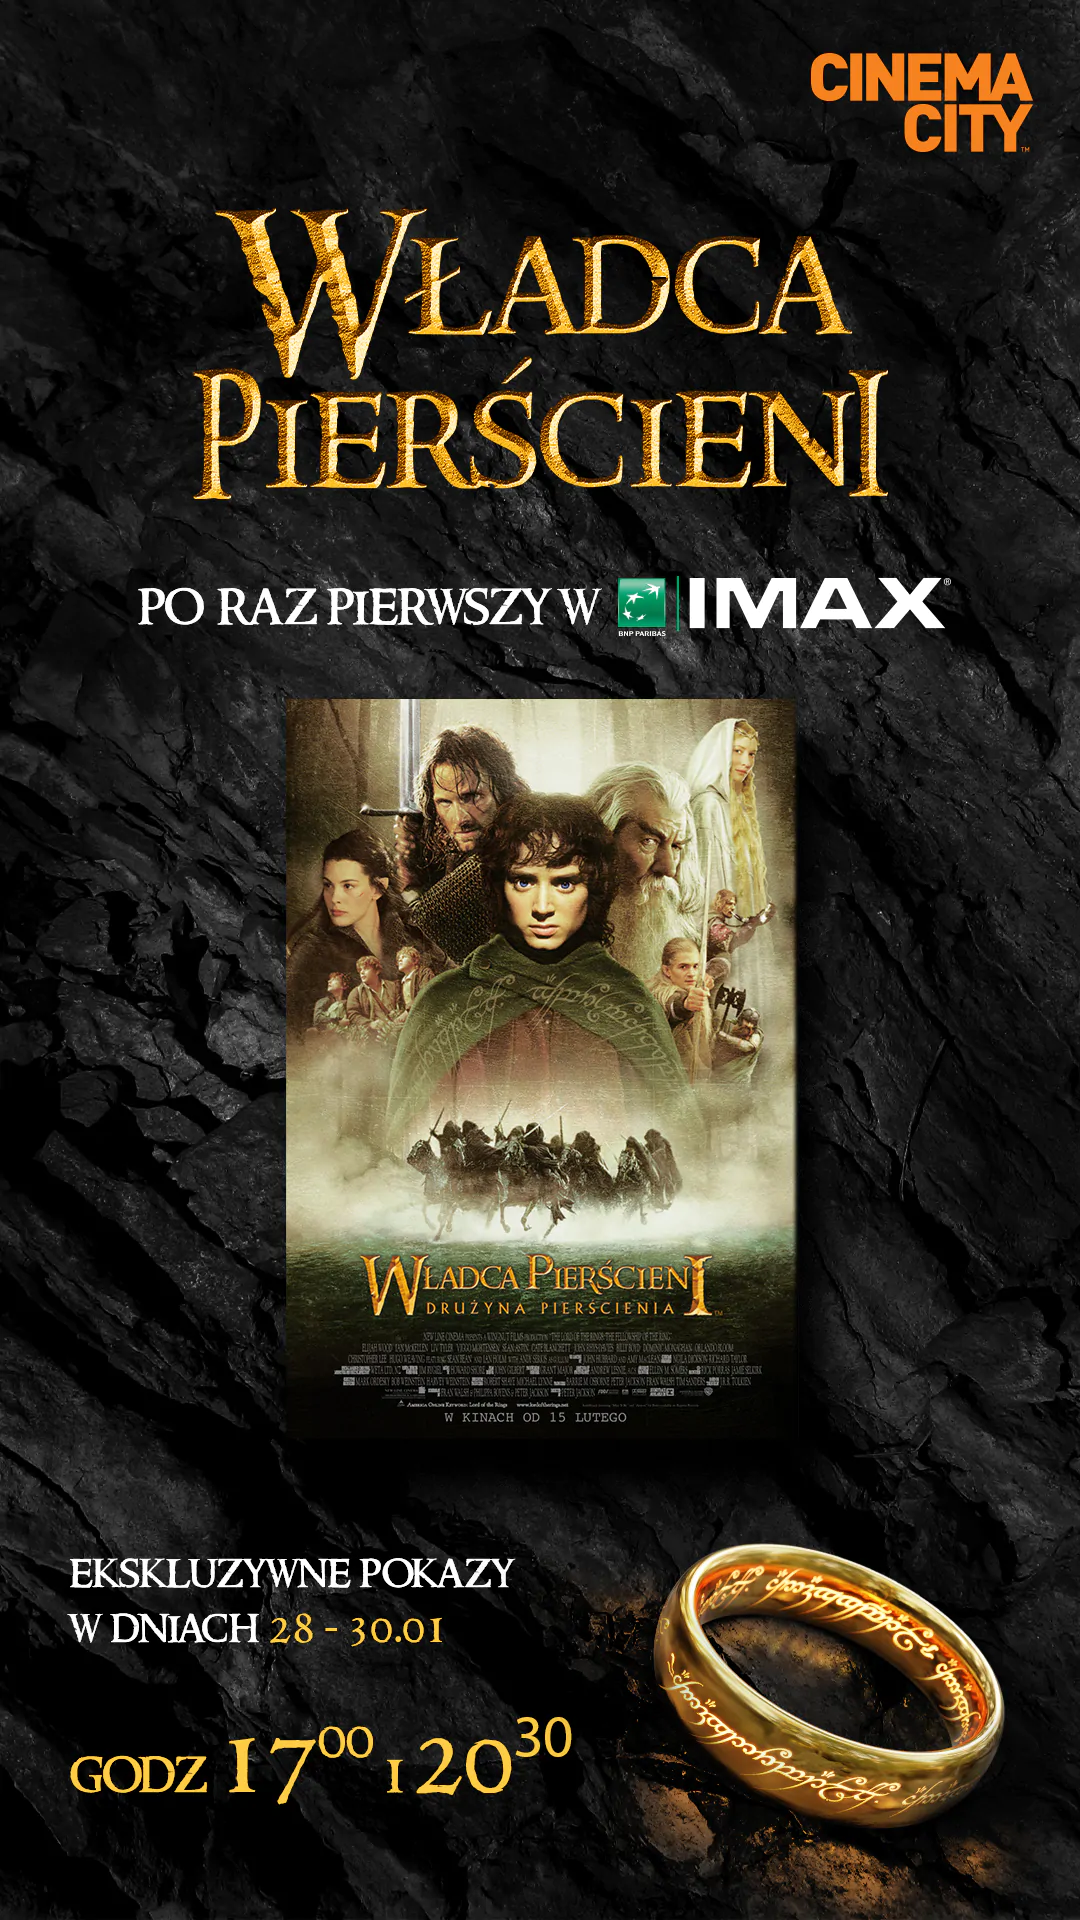 Największe kinowe widowisko XXI wieku - Władca Pierścieni: Drużyna Pierścienia po raz pierwszy w formacie IMAX